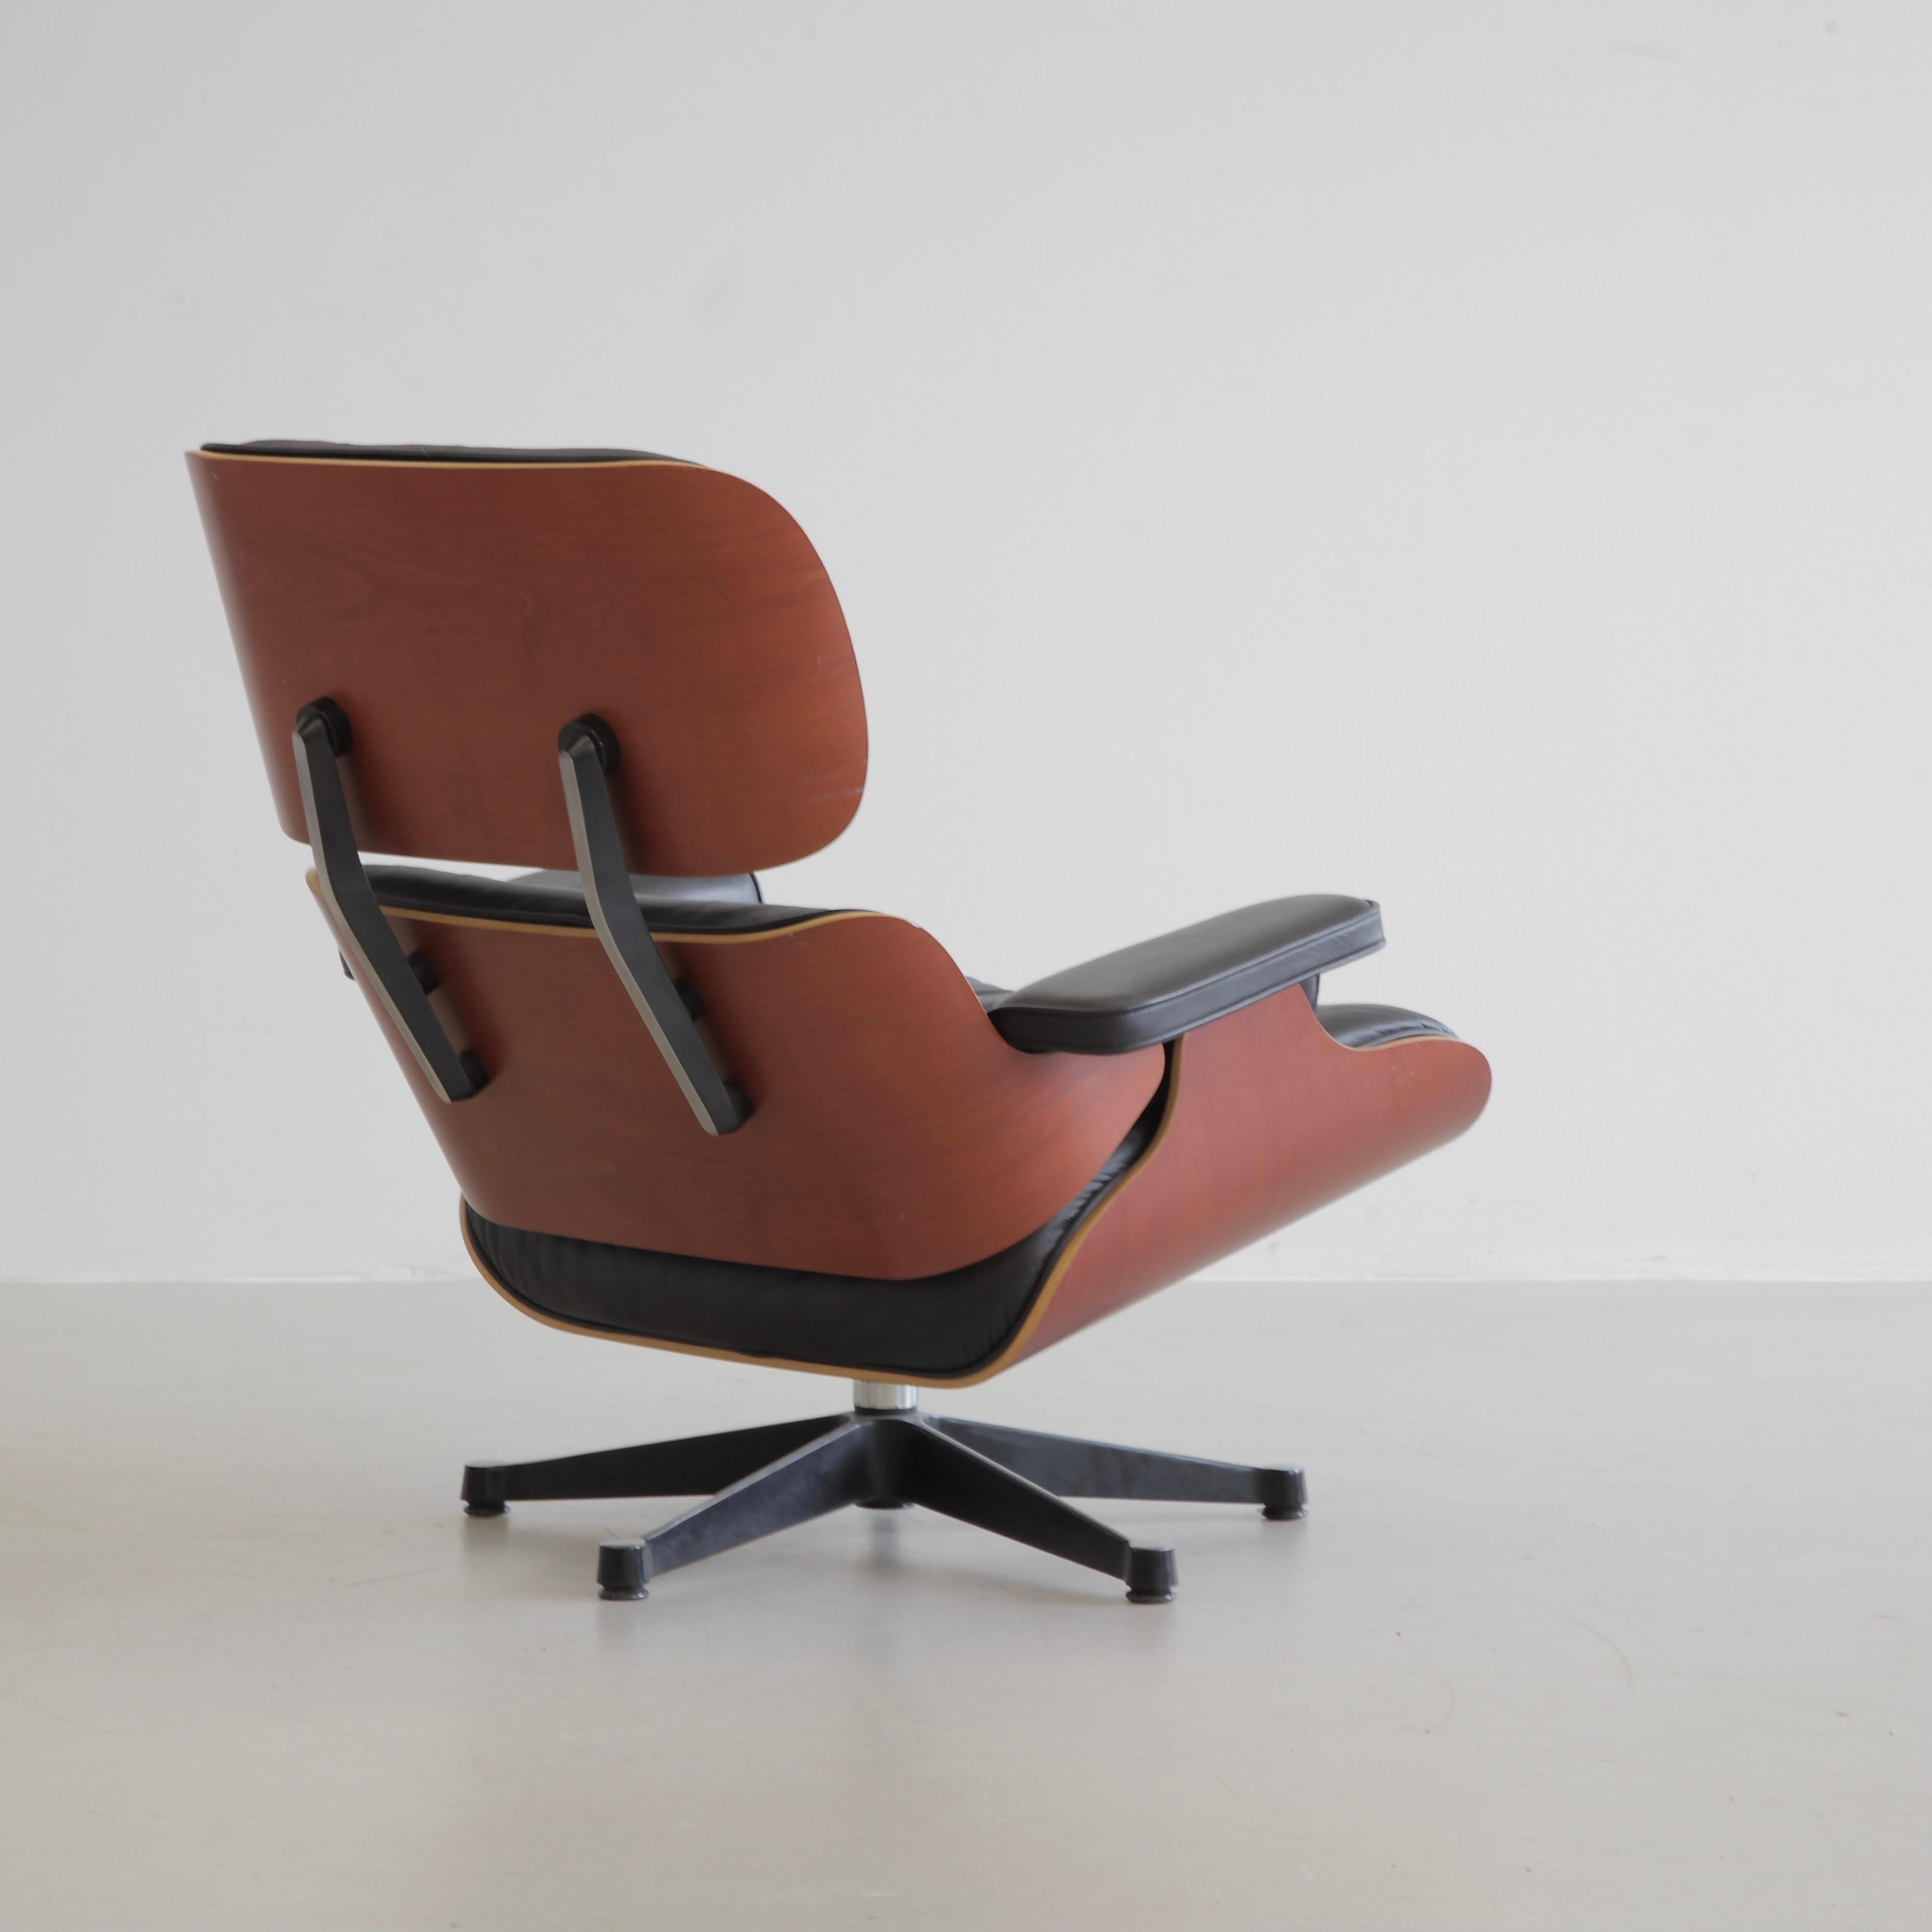 Chaise longue et ottoman, conçus par Charles et Ray Eames en 1956. Allemagne, Vitra, 1999.

Magnifique fauteuil de salon original avec une coque en bois de cerisier et un subtil revêtement en cuir noir. Les étiquettes d'origine du fabricant sont